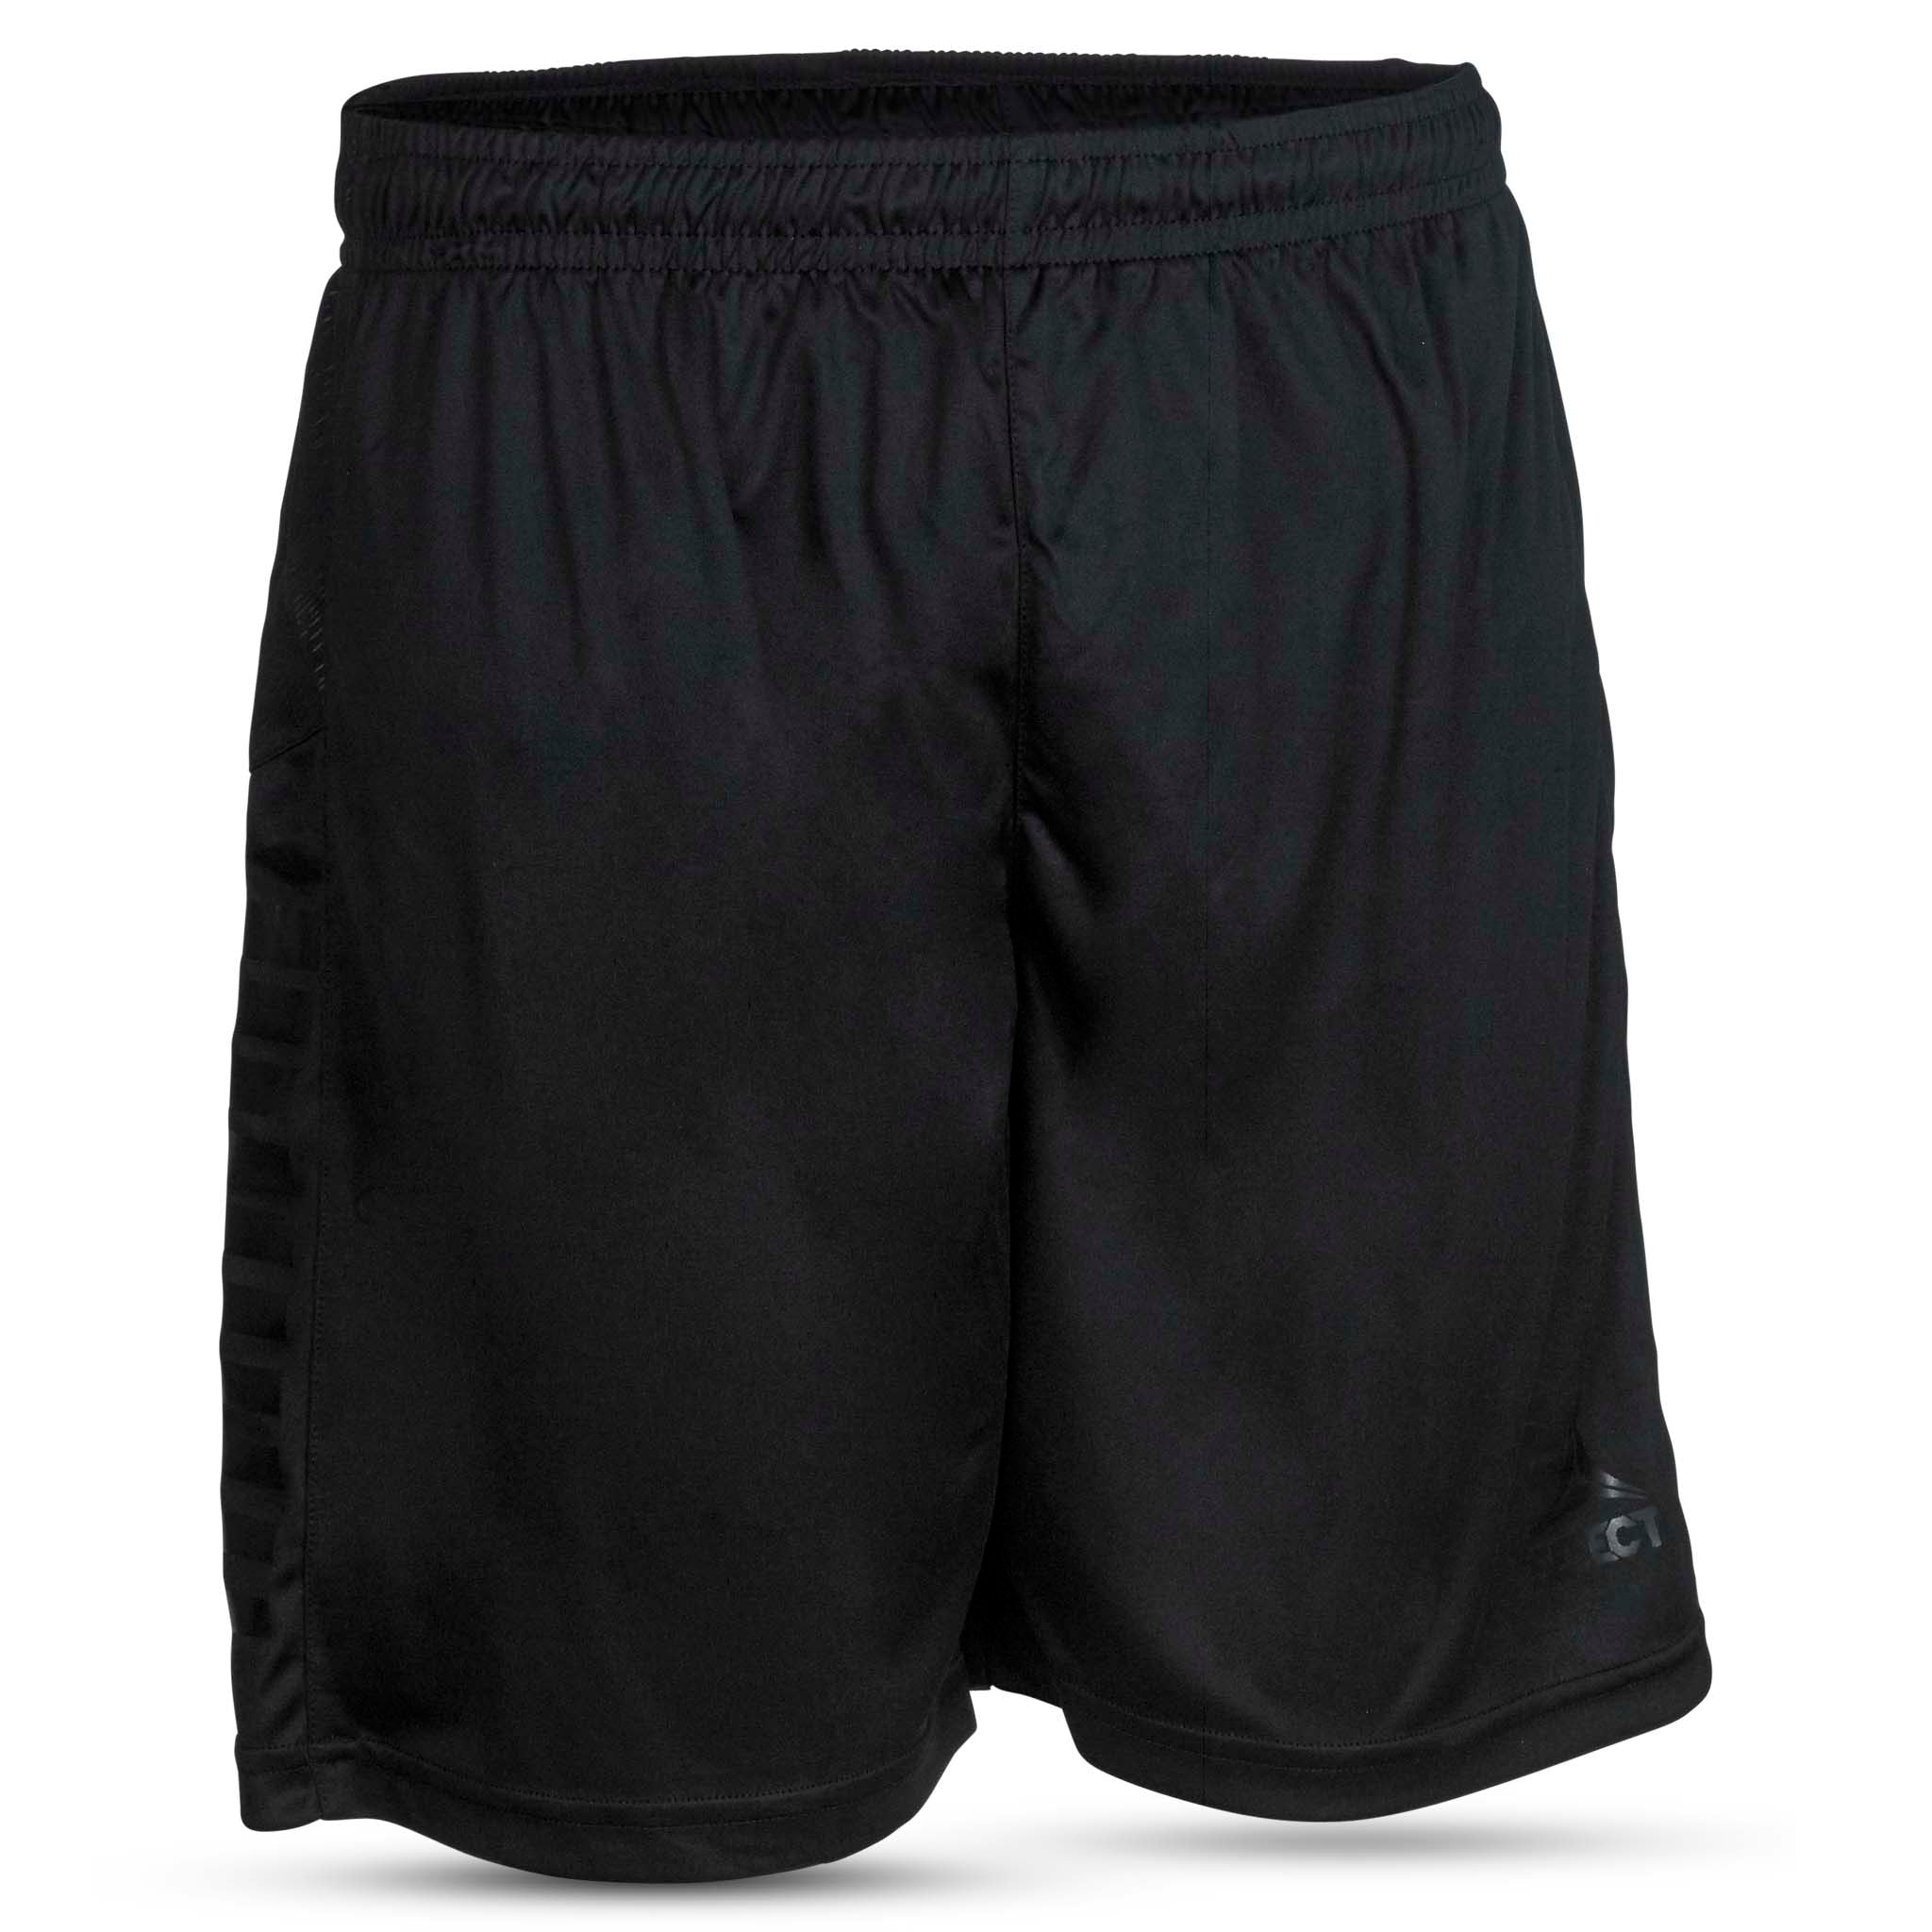 Spain Shorts - Barn #färg_svart/svart